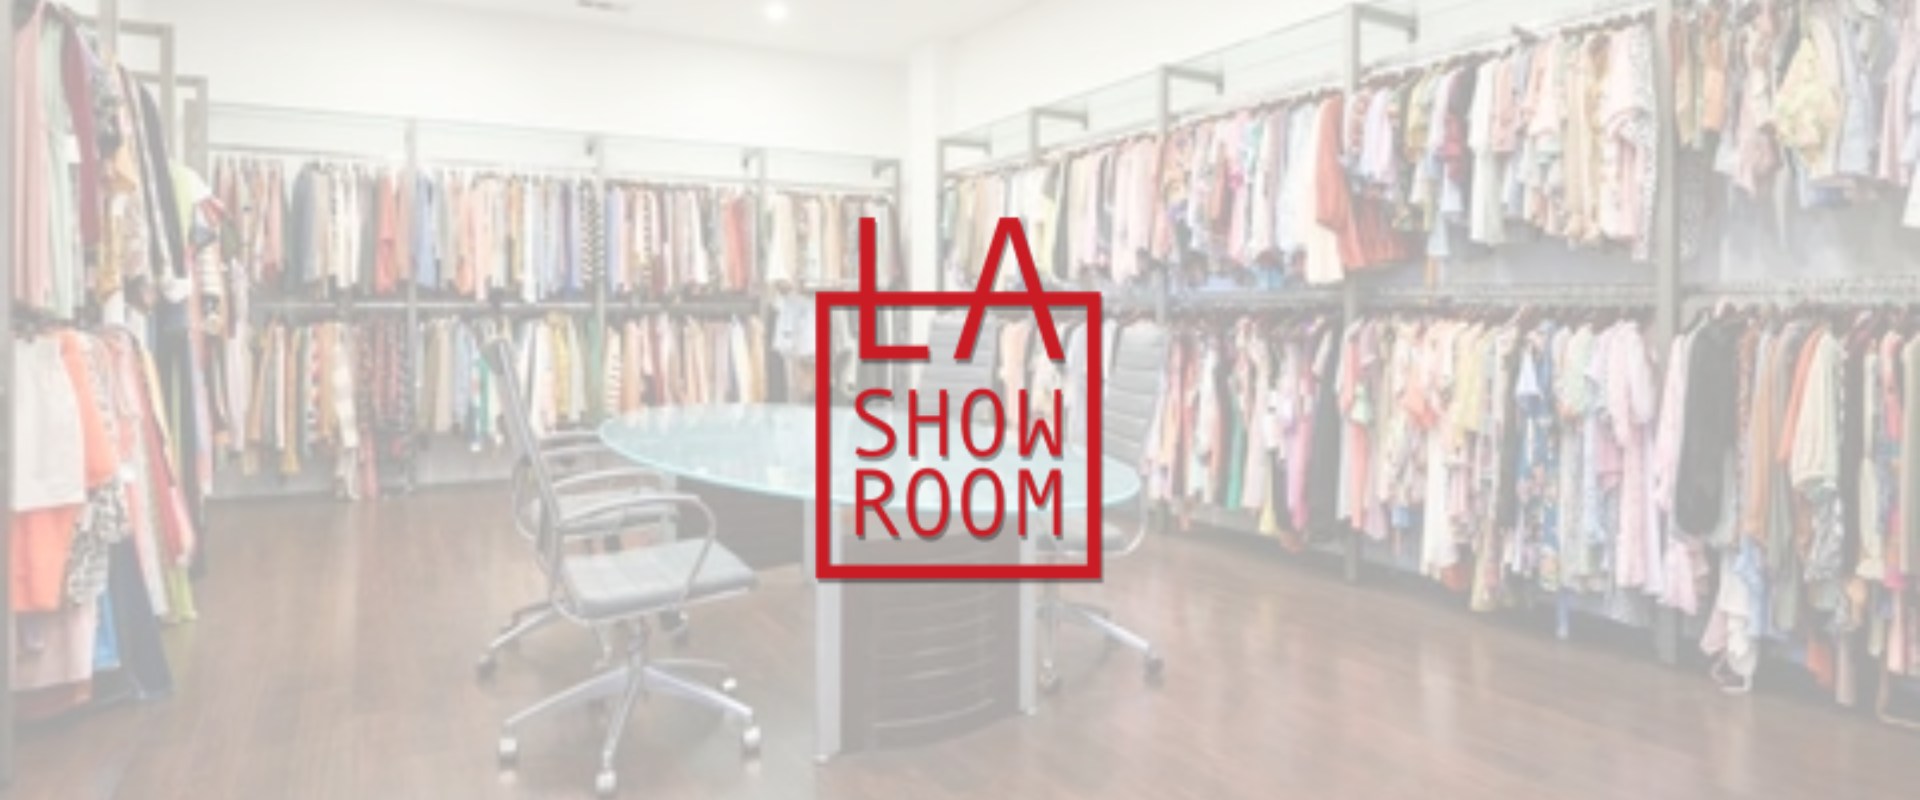 LA Showroom Store and Logo